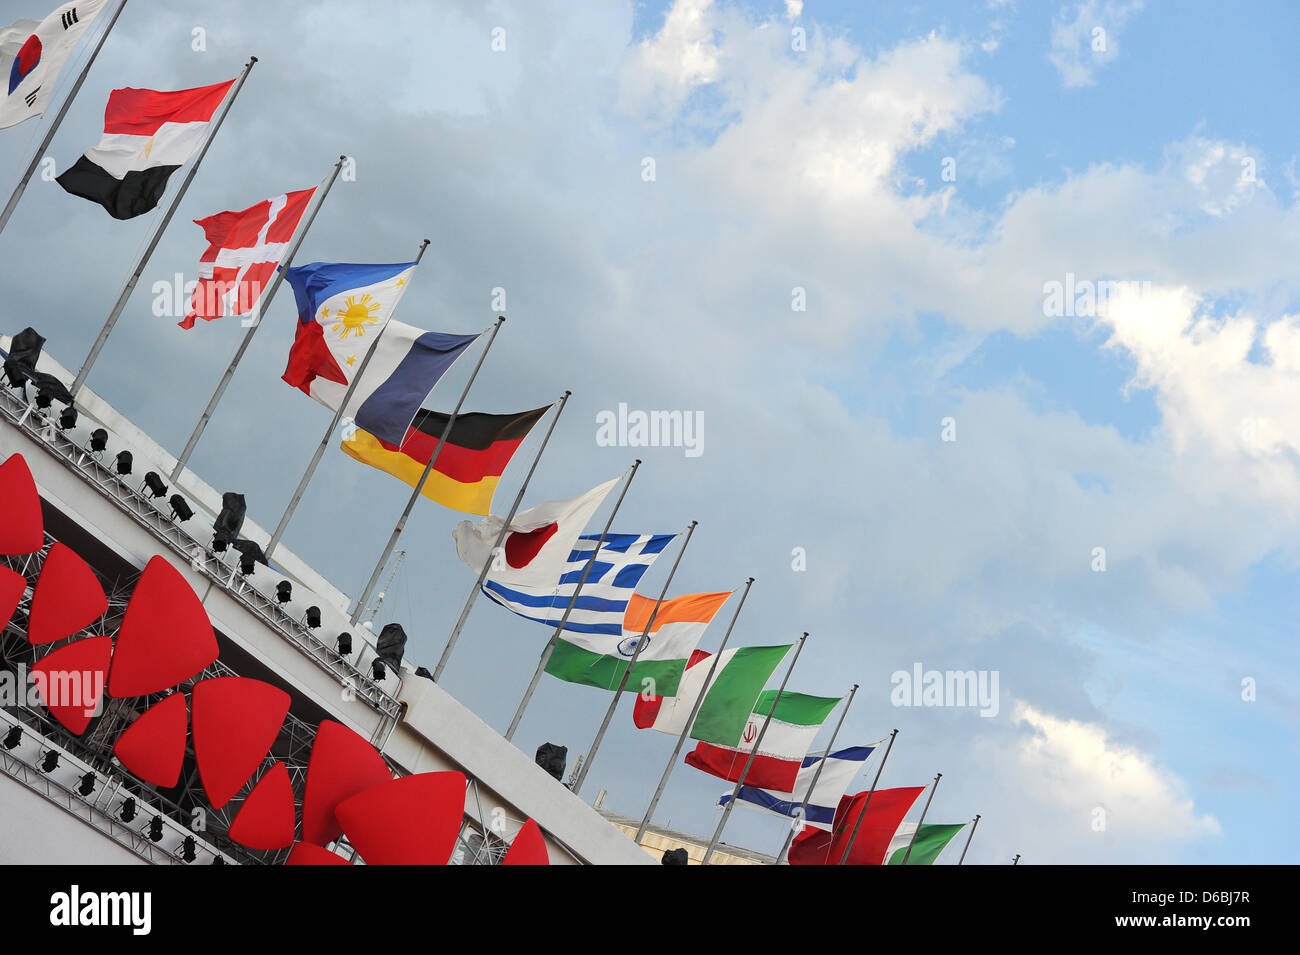 Varias banderas nacionales se publican en el Palazzo del Cinema en el centro de la 69ª Mostra de Venecia, Italia, el 31 de agosto de 2012. Foto: Jens Kalaene Foto de stock